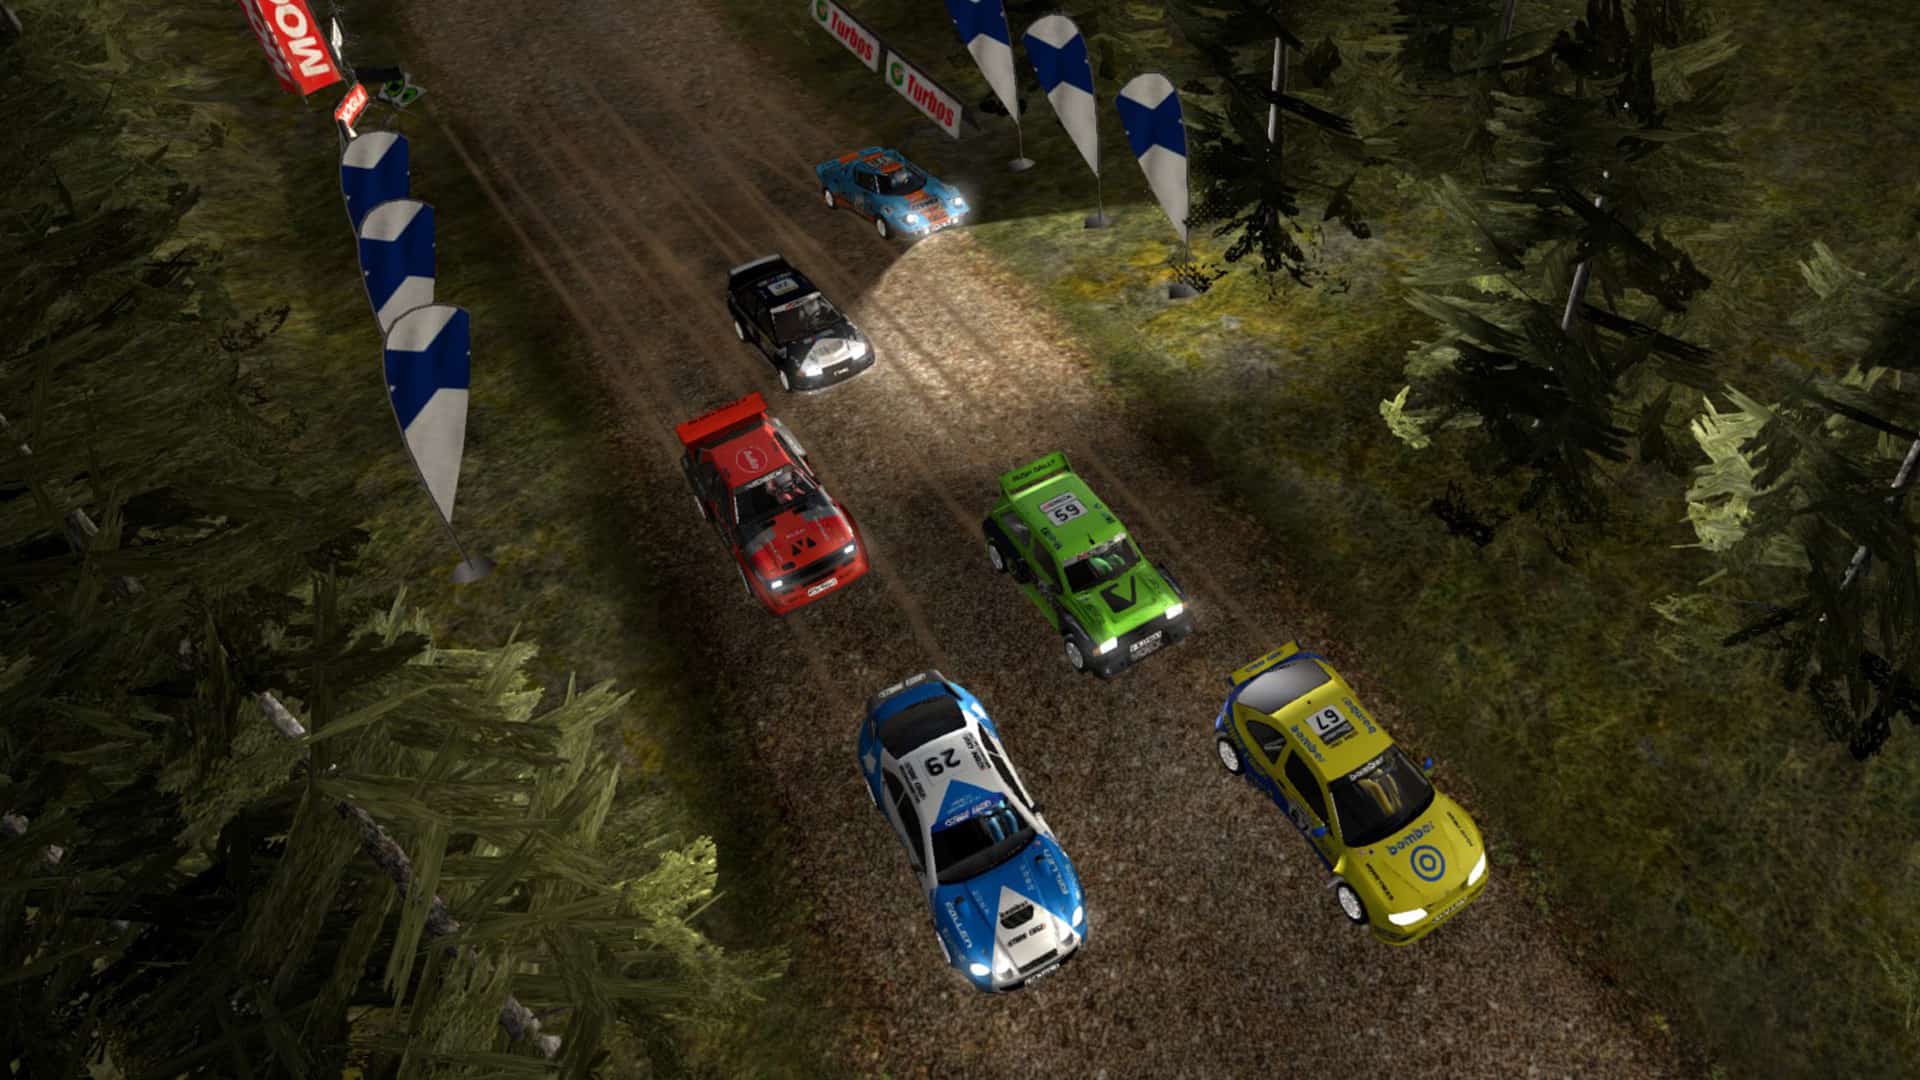 Với nhiều cấp độ khác nhau và ma trận đường đua đầy thử thách, Rush Rally Origins là một trò chơi đua xe PC tuyệt vời. Hãy xem hình ảnh liên quan để cảm nhận thêm về tốc độ và cảm giác hồi hộp khi lái xe trên những đoạn đường đầy cam go.